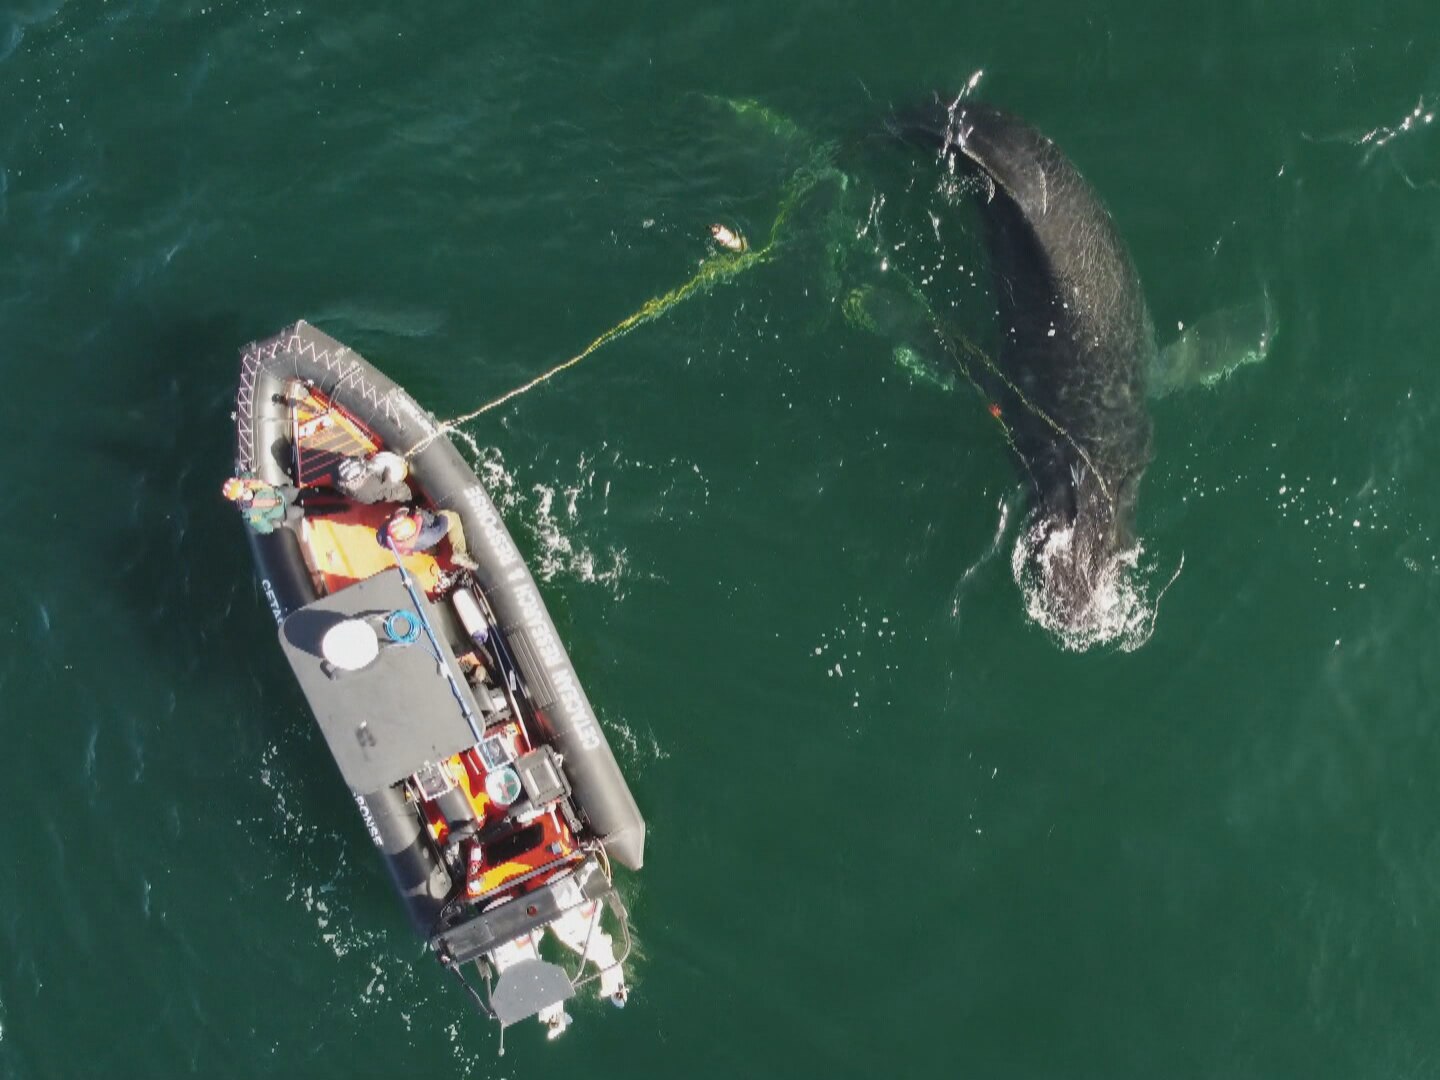 La baleine sauvée près de Haida Gwaii « repérée par hasard »
La baleine sauvée près de Haida Gwaii « repérée par hasard »